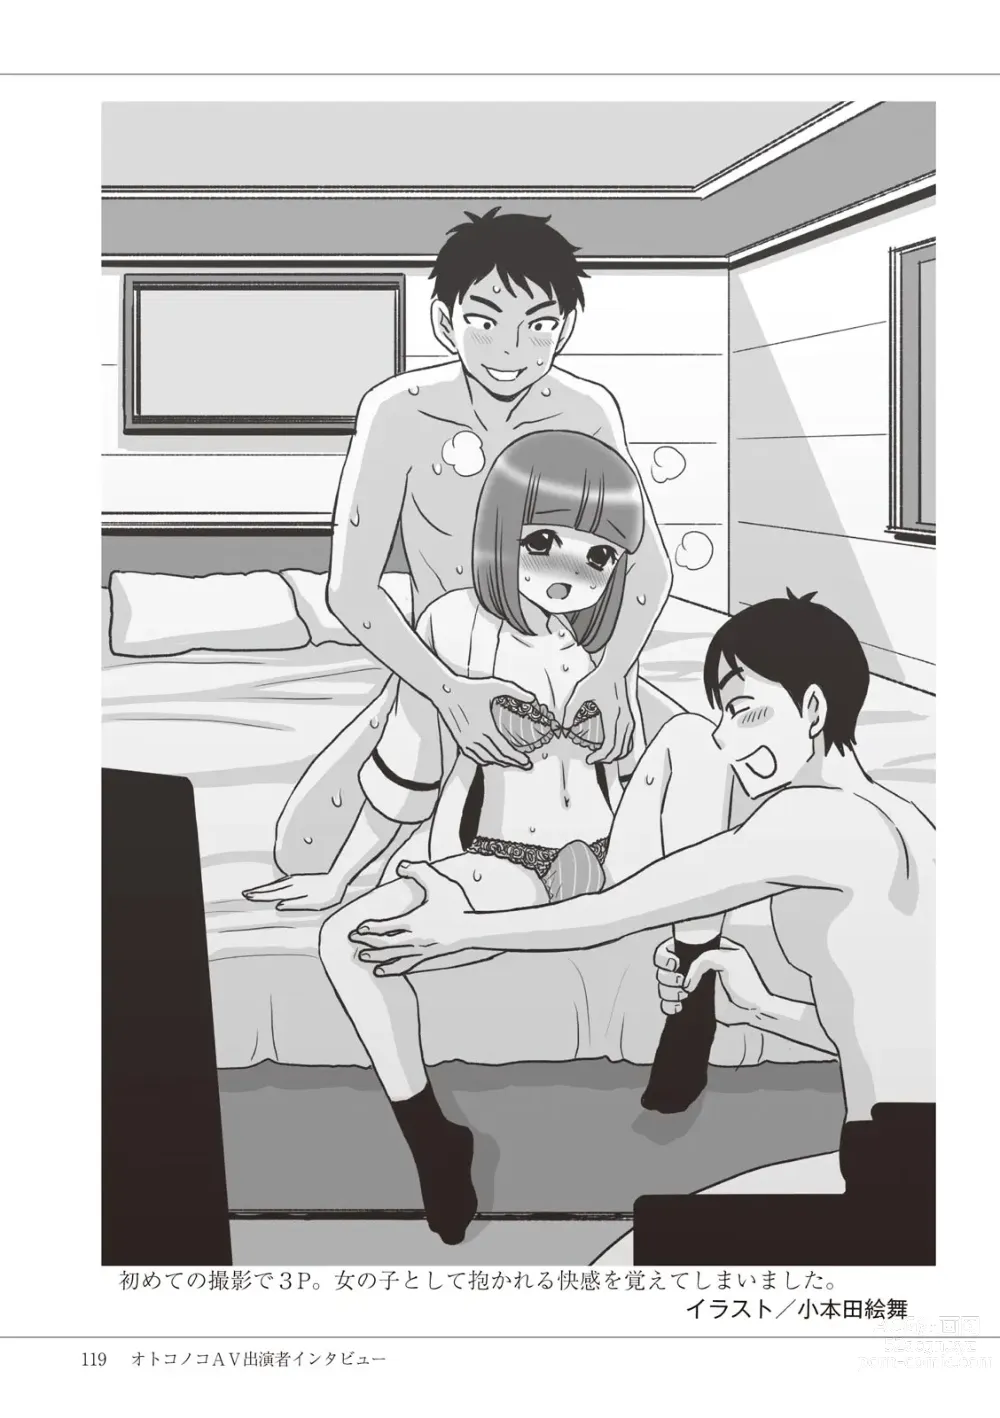 Page 121 of manga Manga de Furikaeru Otokonoko 10-nenshi